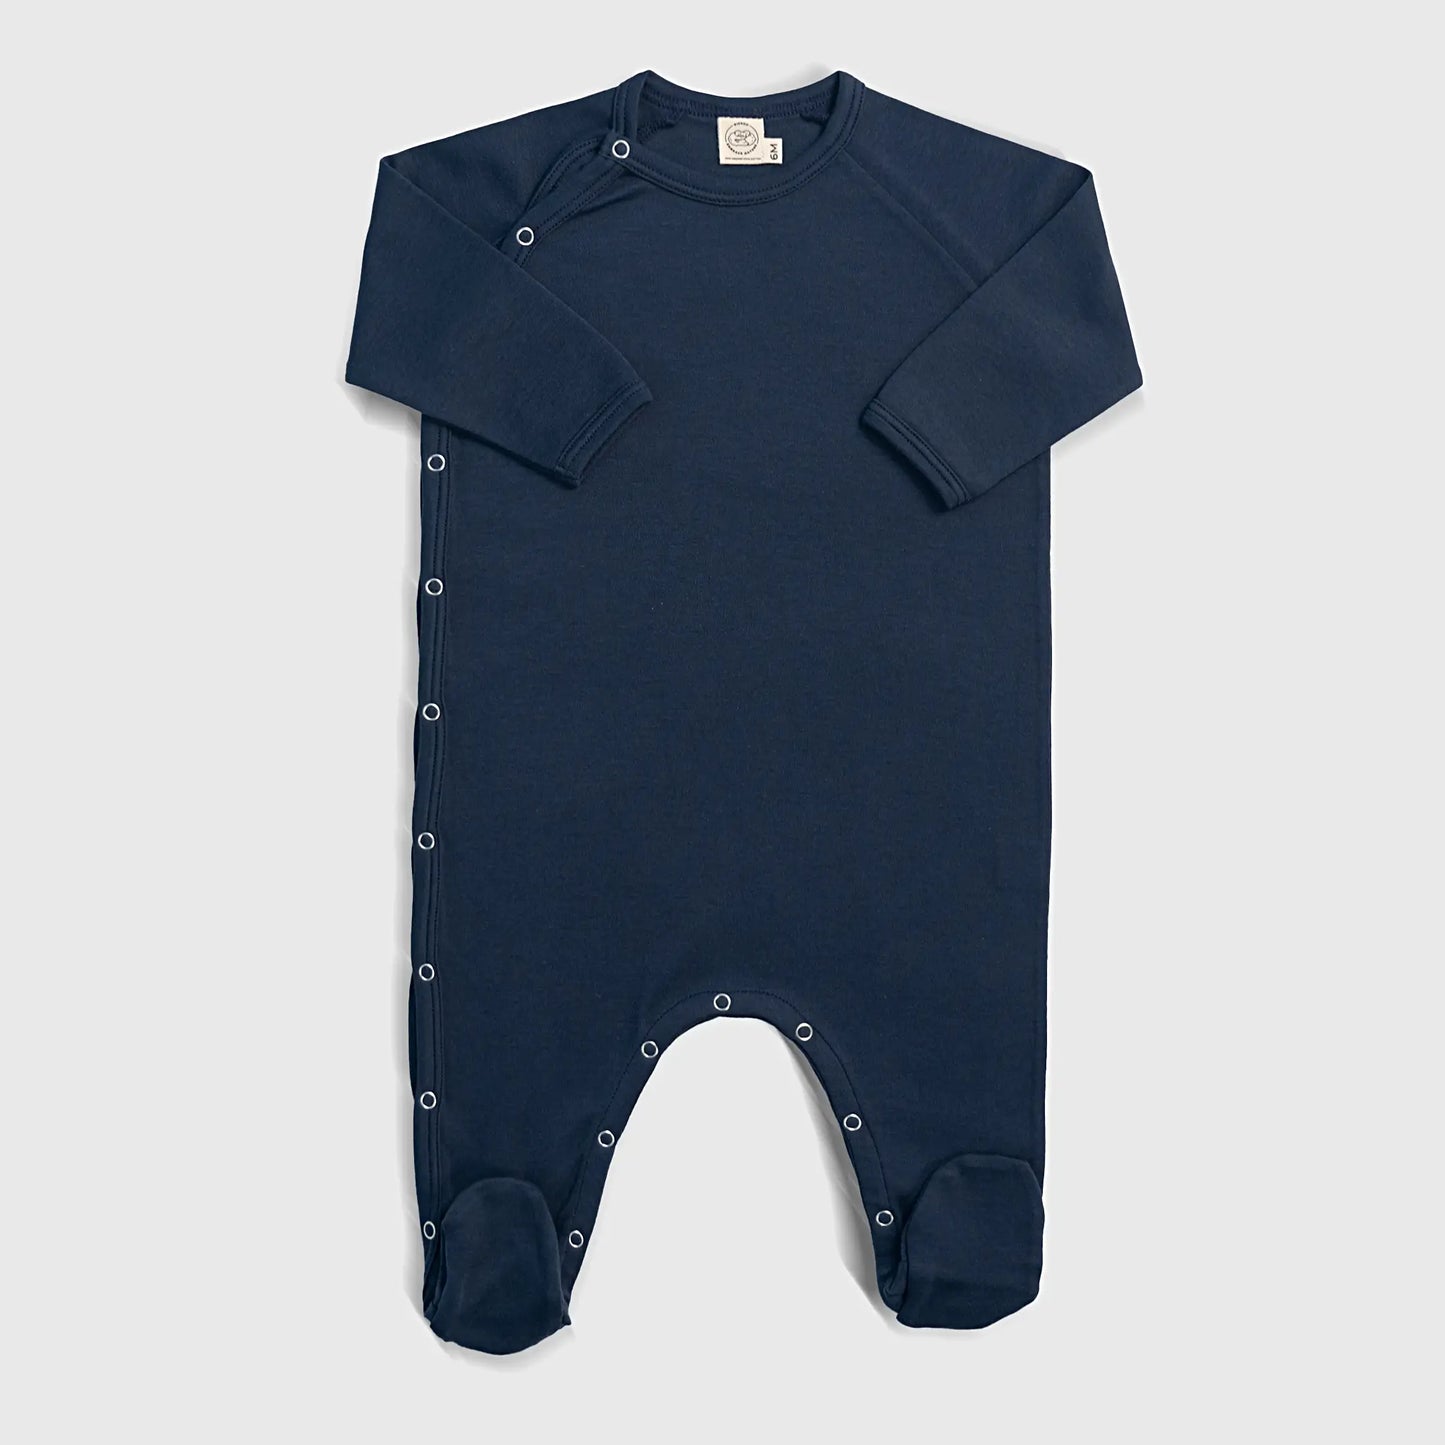 Baby's Organic Pima Cotton Footie Pajamas color Navy Blue